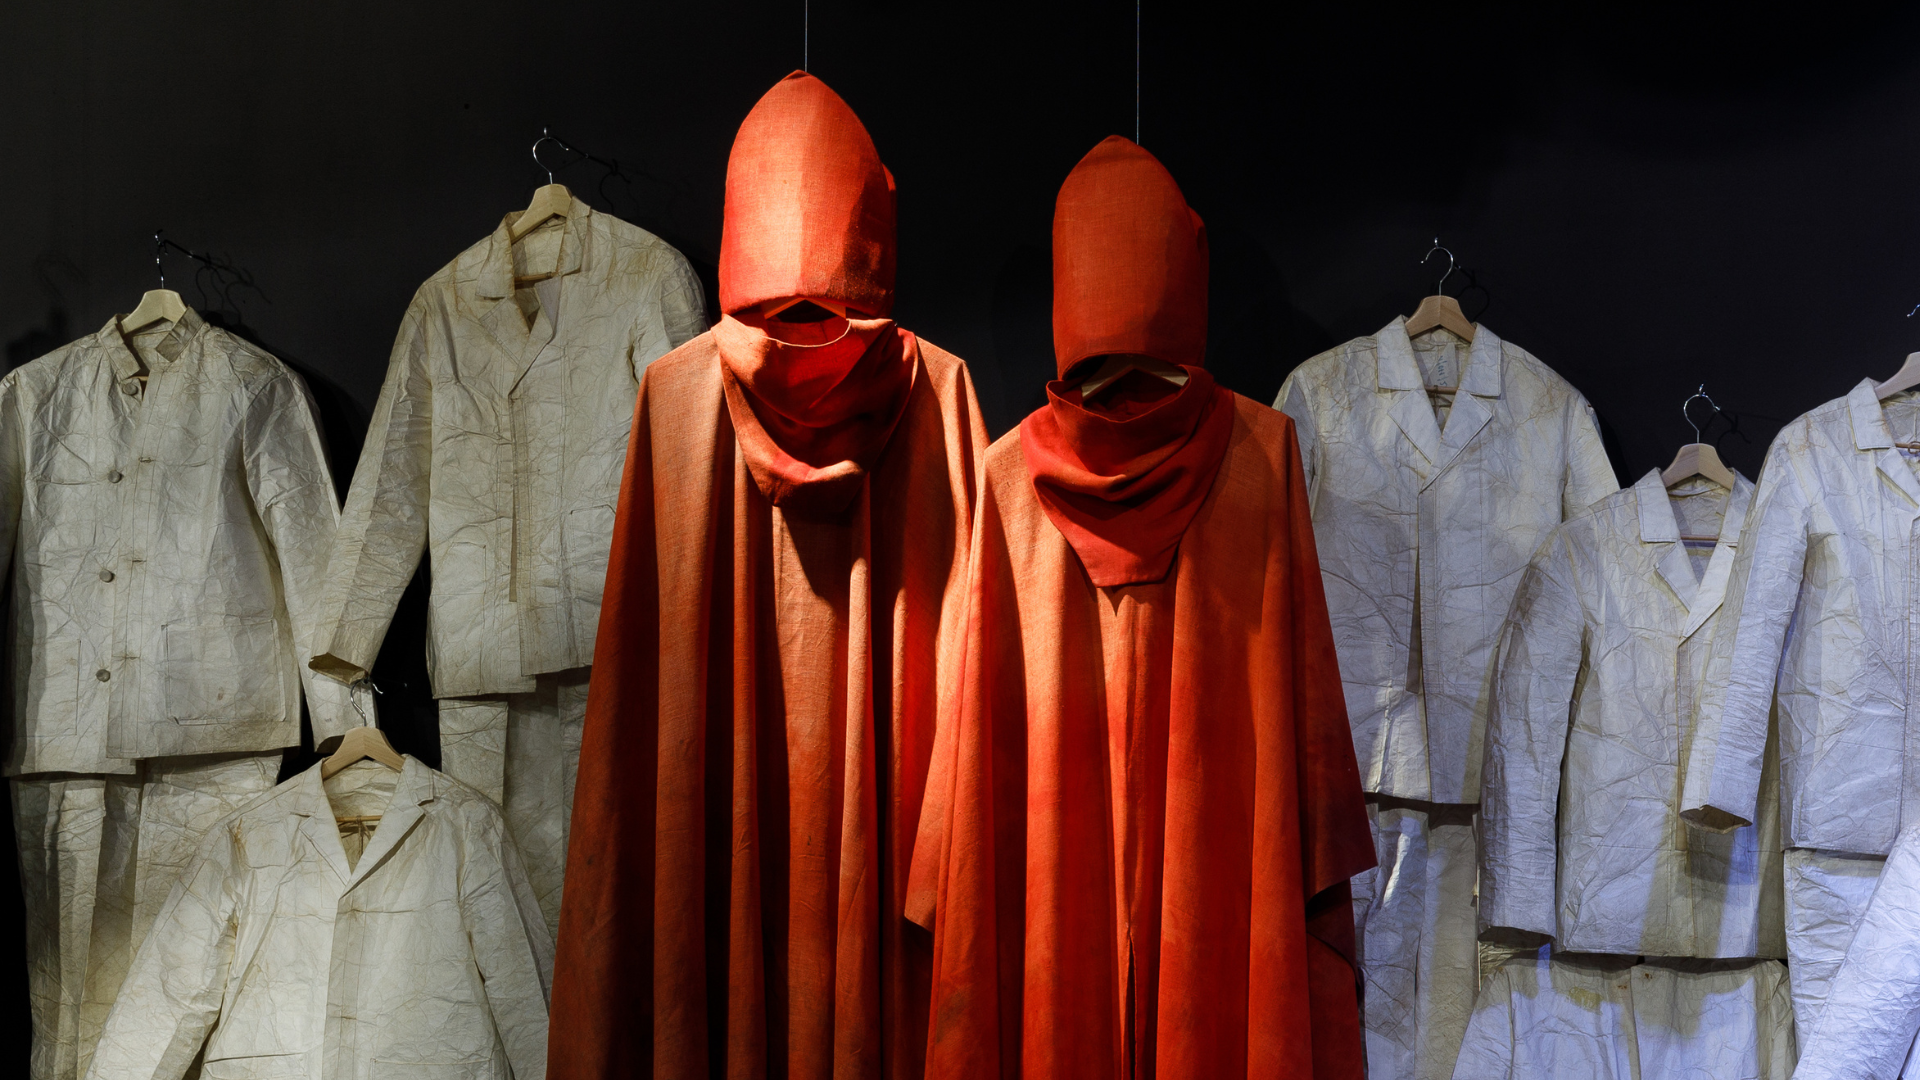 Zdjęcie kostiumów wiszących koło siebie. W centrum znajdują się dwa czerwone kostiumy biskupów. Wokół nich wiszą białe, przypominające mundury ubrania.